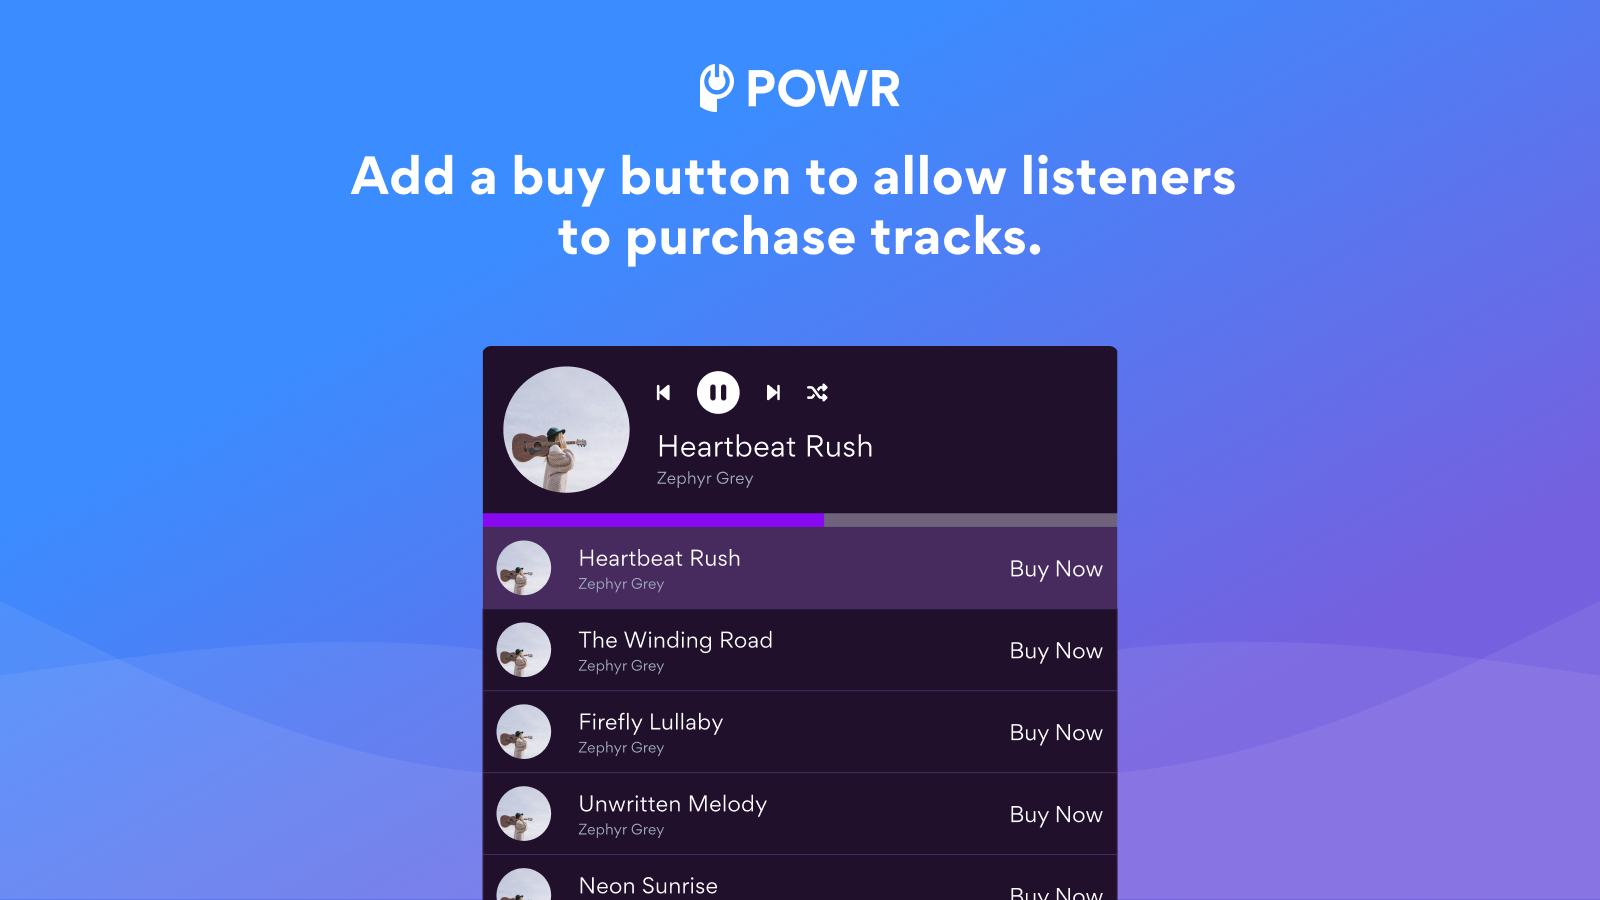 añade un botón de compra para permitir a los oyentes comprar pistas